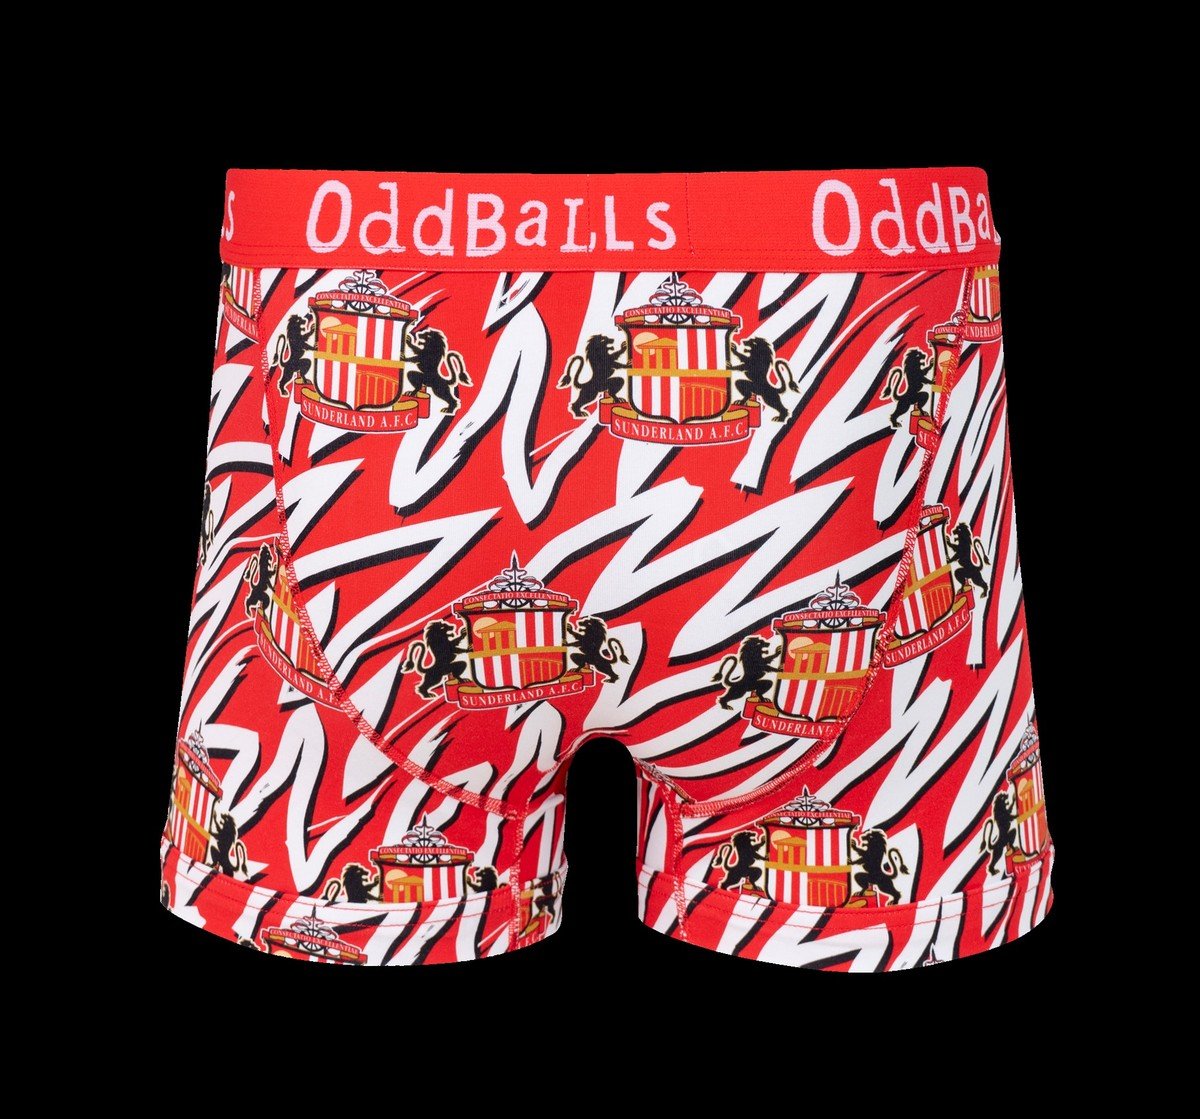 Buy the OddBalls Zebra Boxer Short online at Sunderland AFC Store